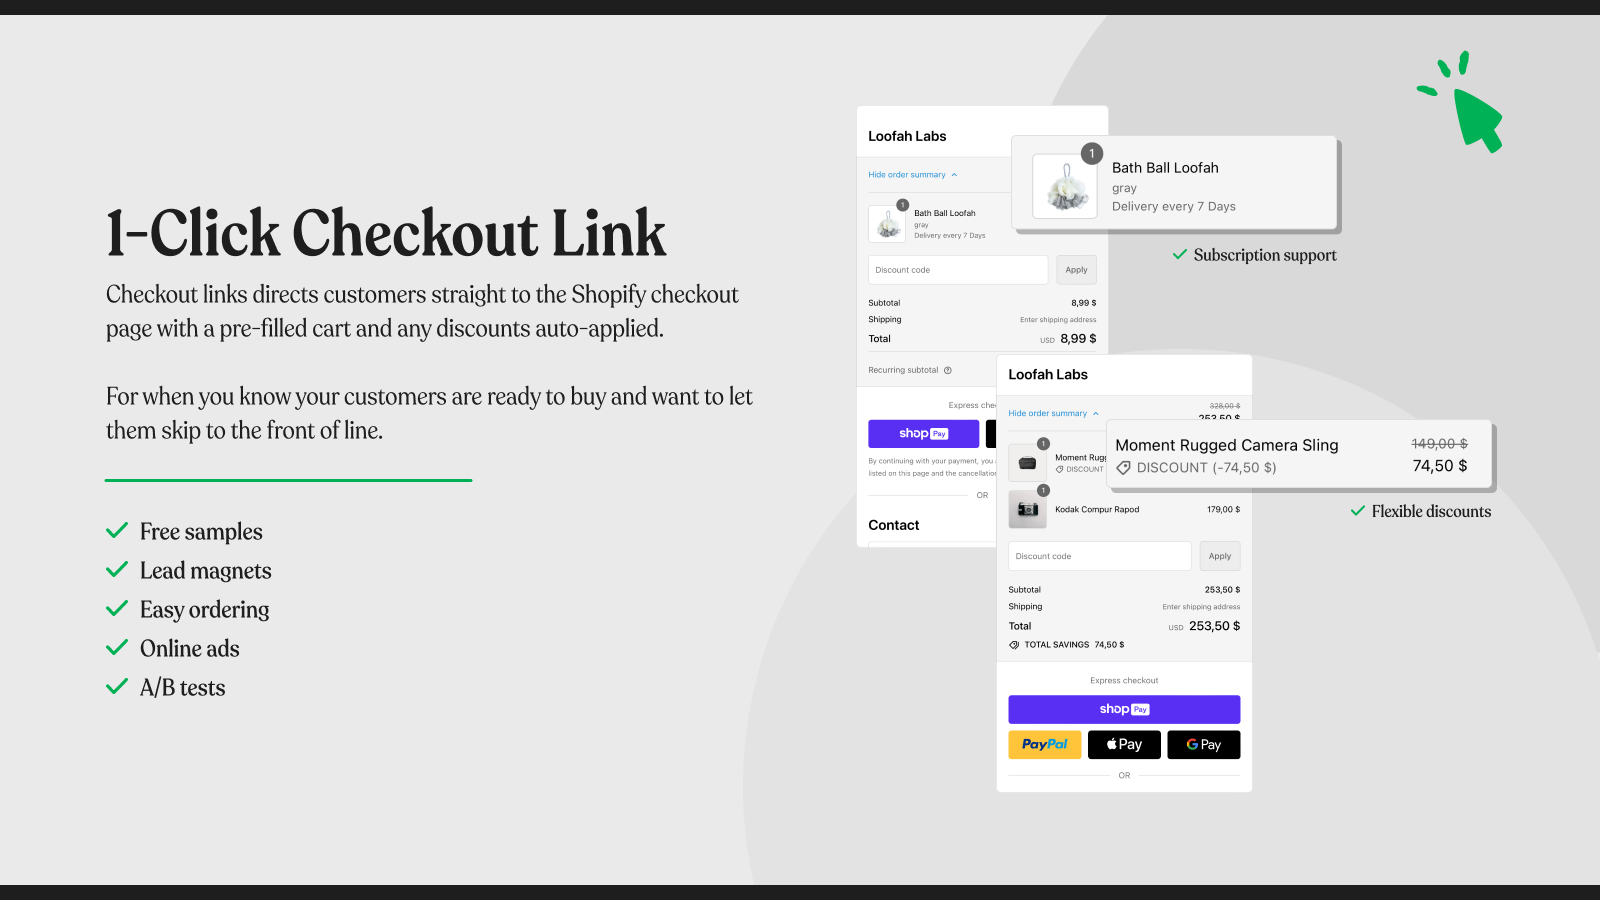 1-Klick-Checkout-Links